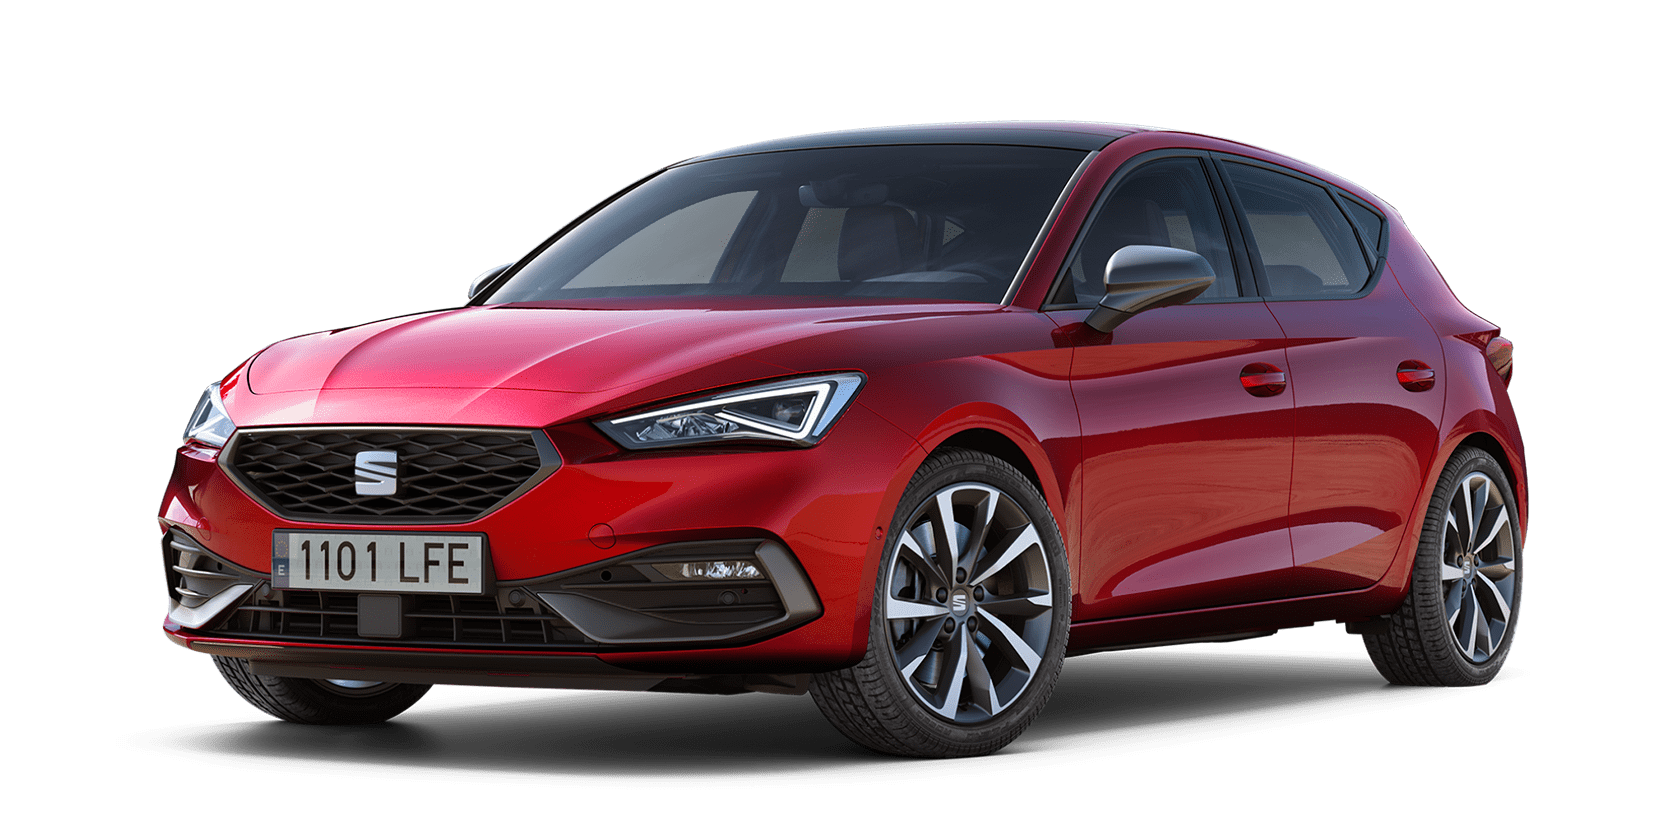 Seat León: precios y versiones del compacto español